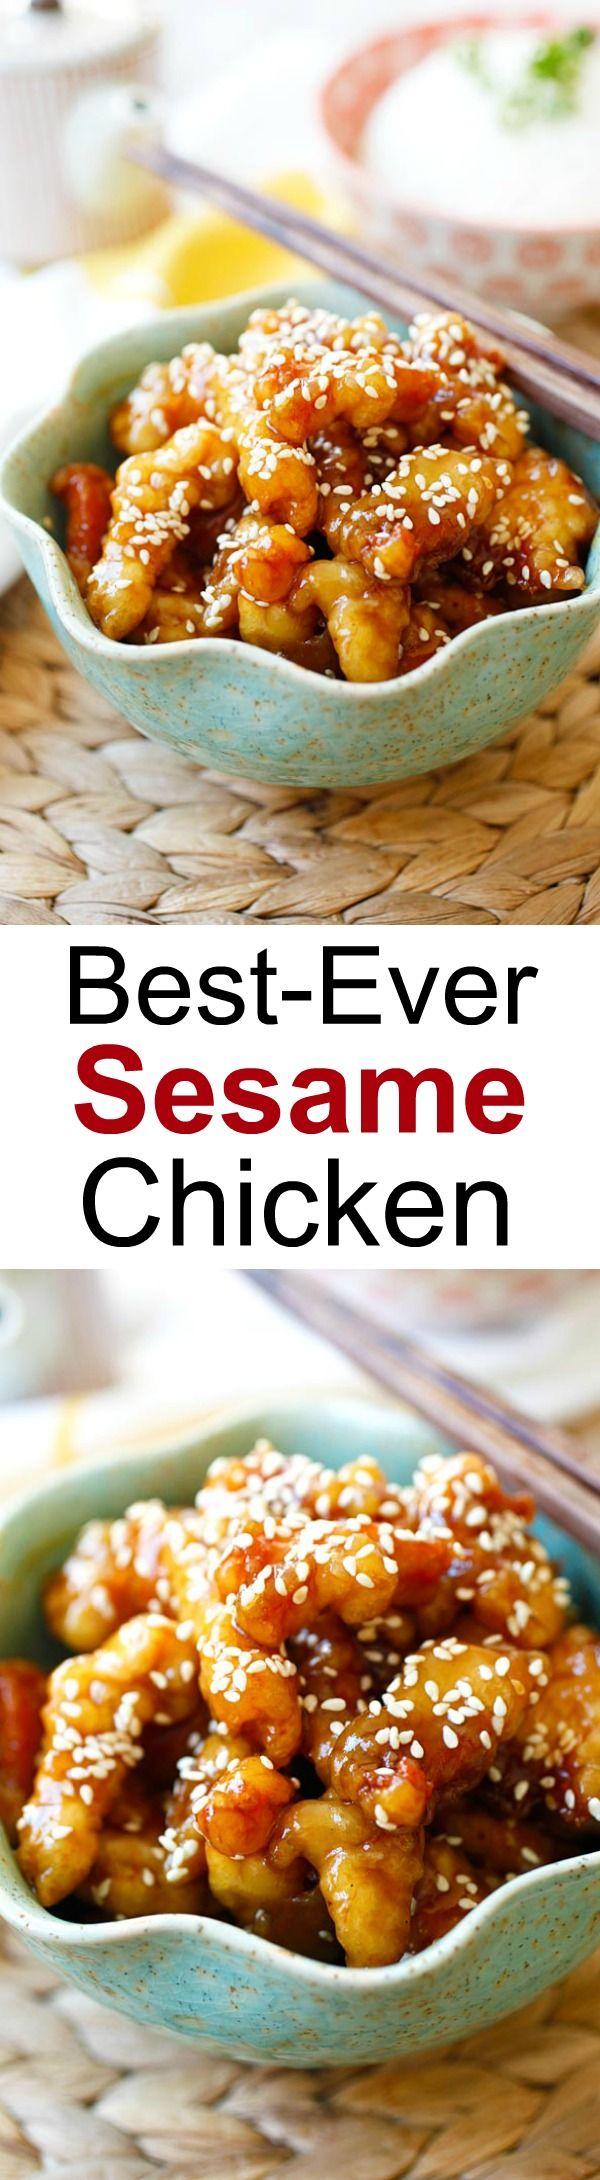 Wedding - Sesame Chicken